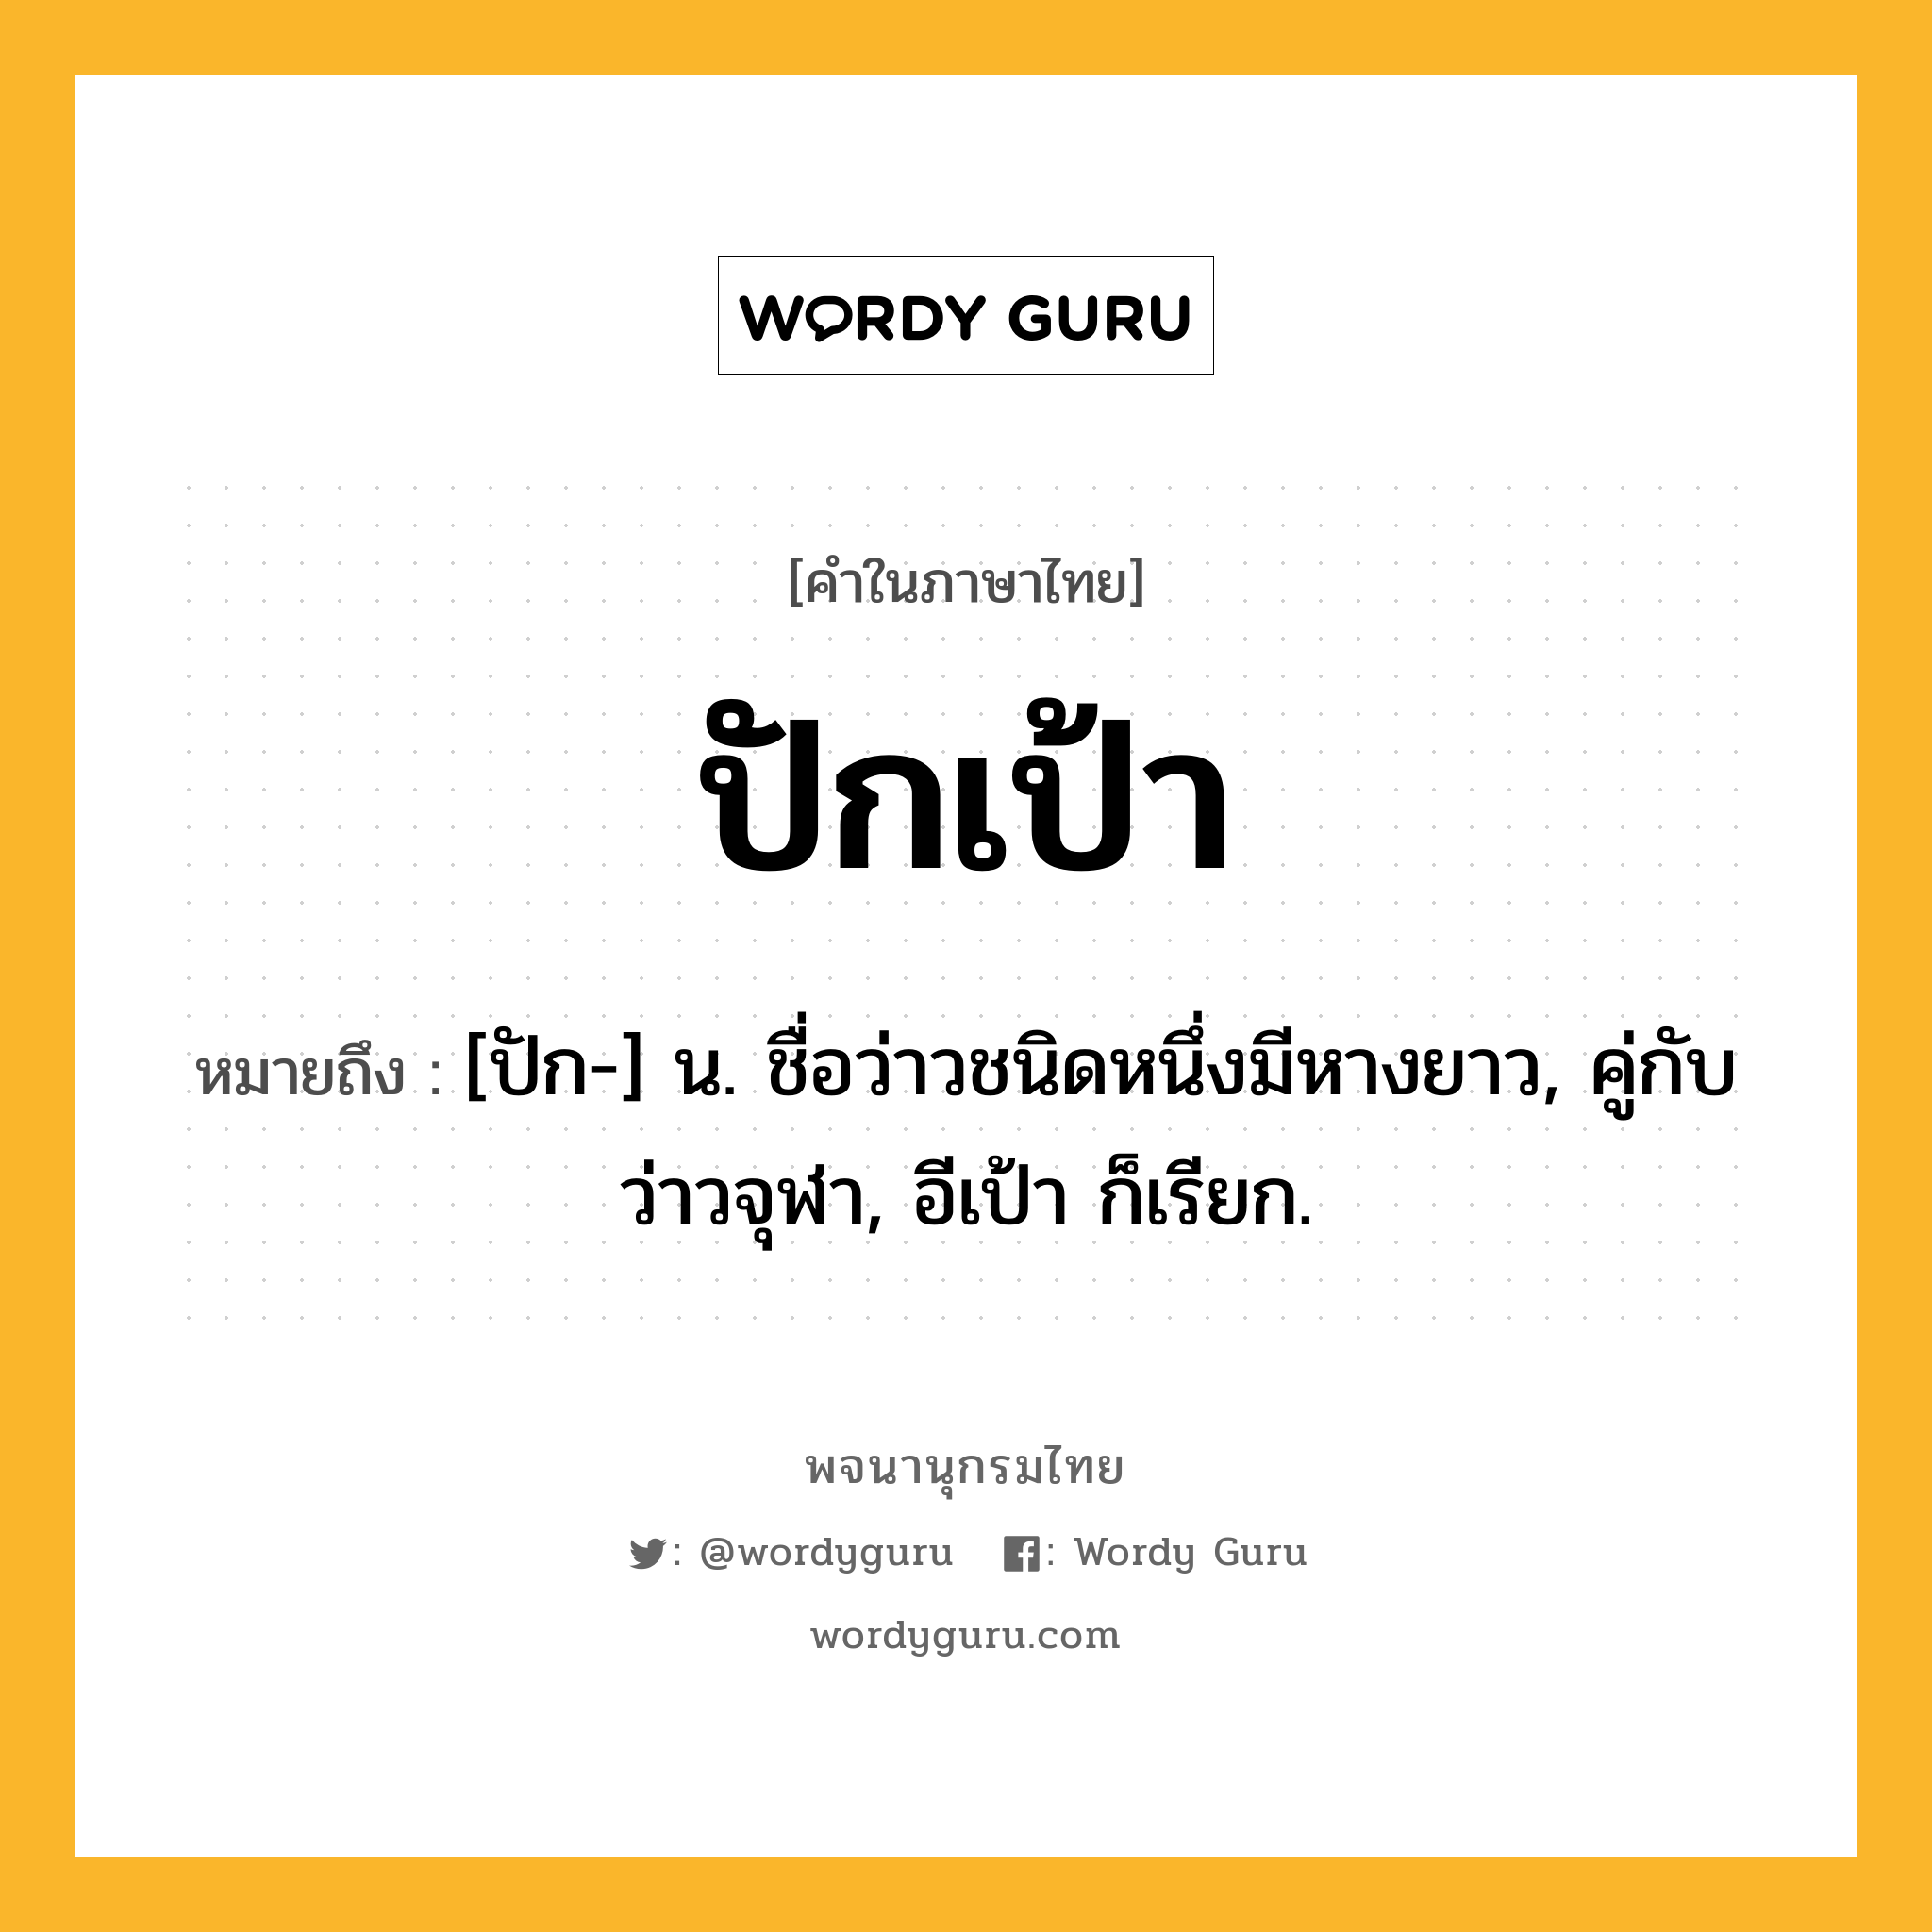 ปักเป้า หมายถึงอะไร?, คำในภาษาไทย ปักเป้า หมายถึง [ปัก-] น. ชื่อว่าวชนิดหนึ่งมีหางยาว, คู่กับ ว่าวจุฬา, อีเป้า ก็เรียก.